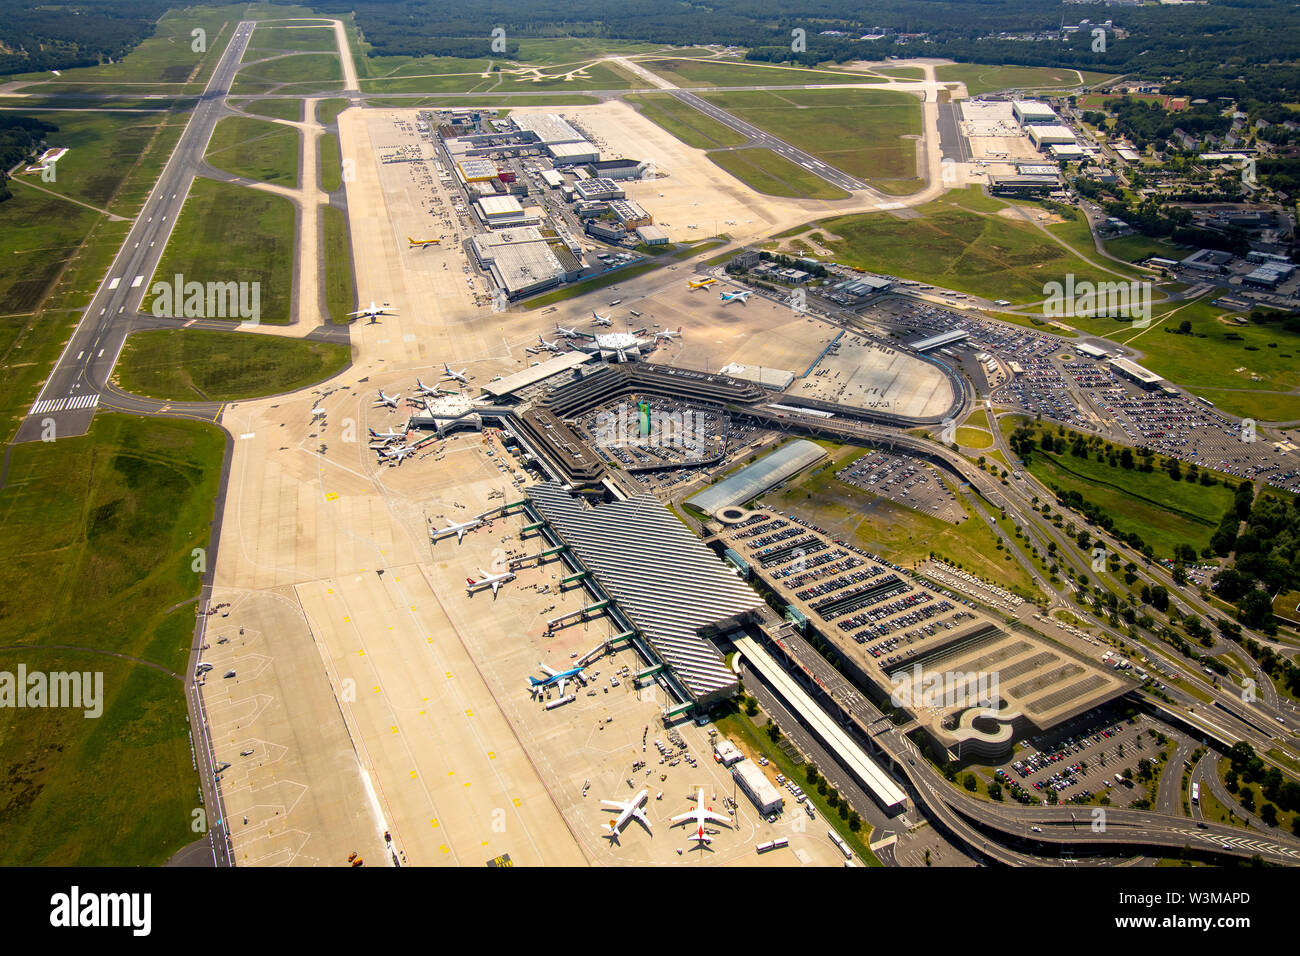 Fotografia aerea di Colonia / Bonn Airport "Konrad Adenauer' con il terminale degli edifici e delle piste di atterraggio e di decollo, aeroporto internazionale nella parte sudorientale della Foto Stock